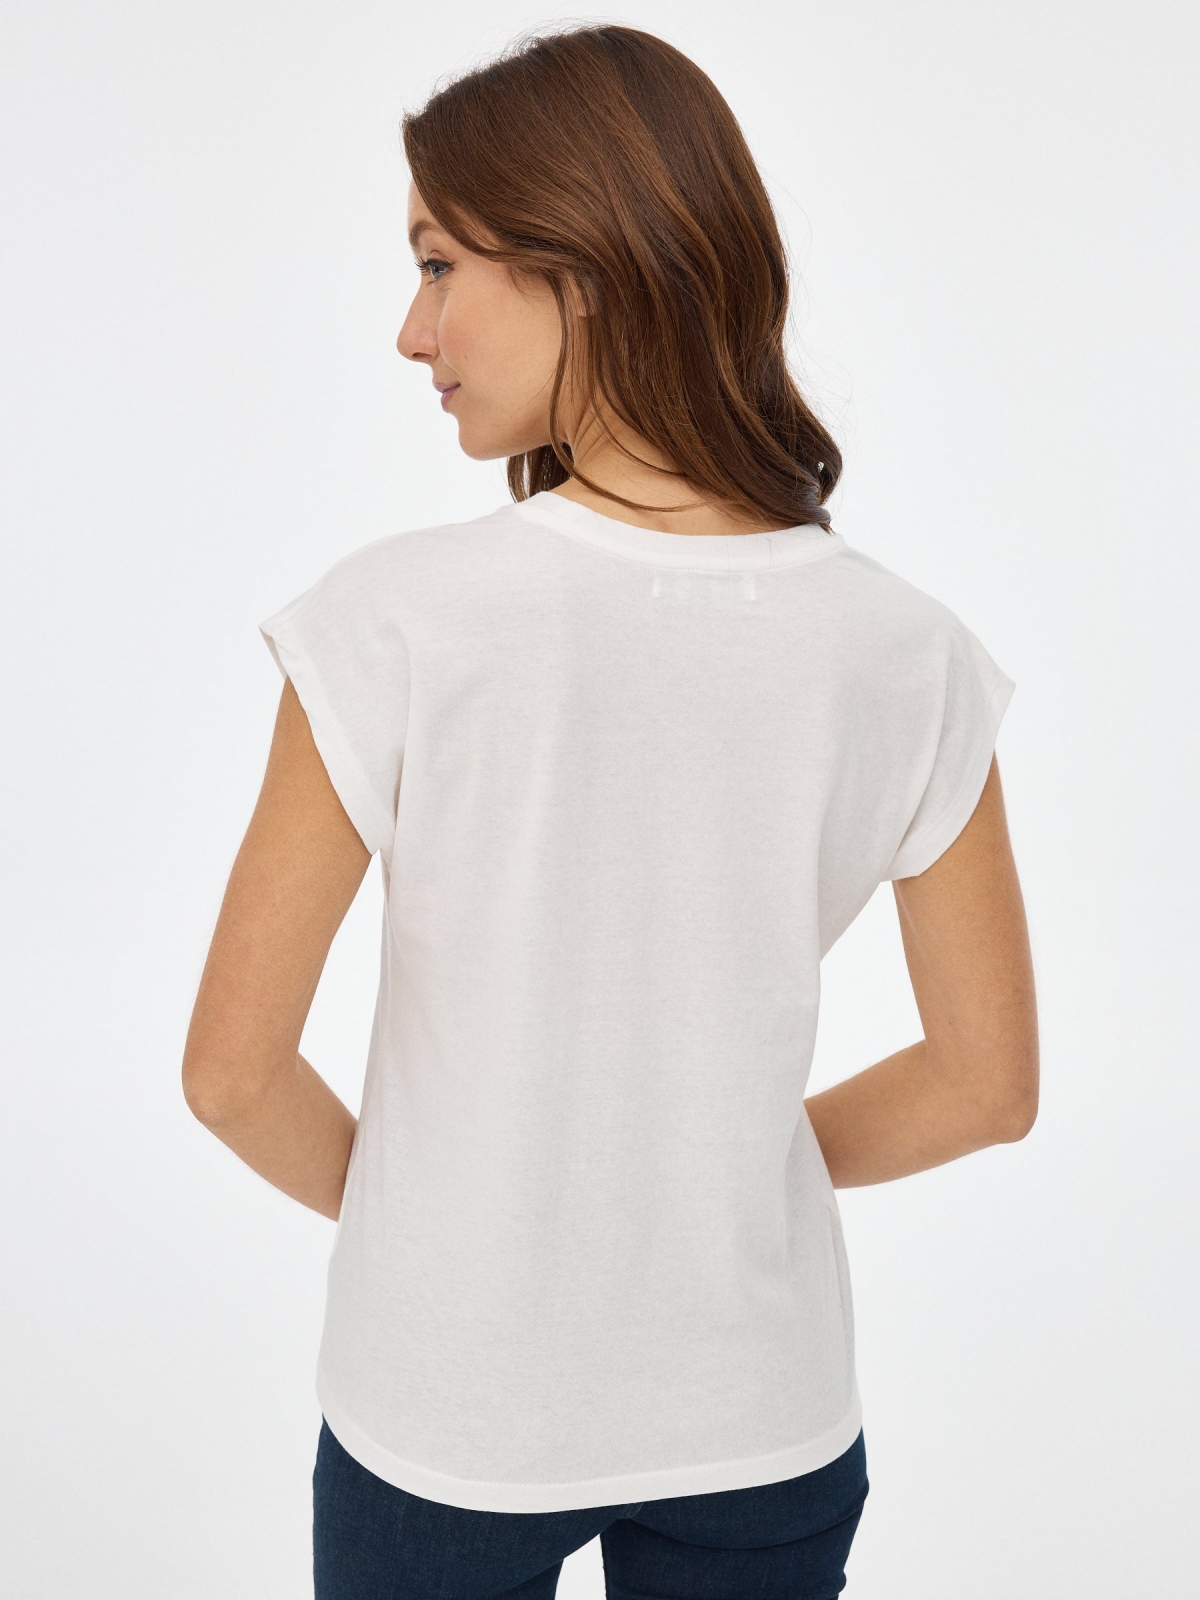 Camiseta con estampado blanco roto vista media trasera